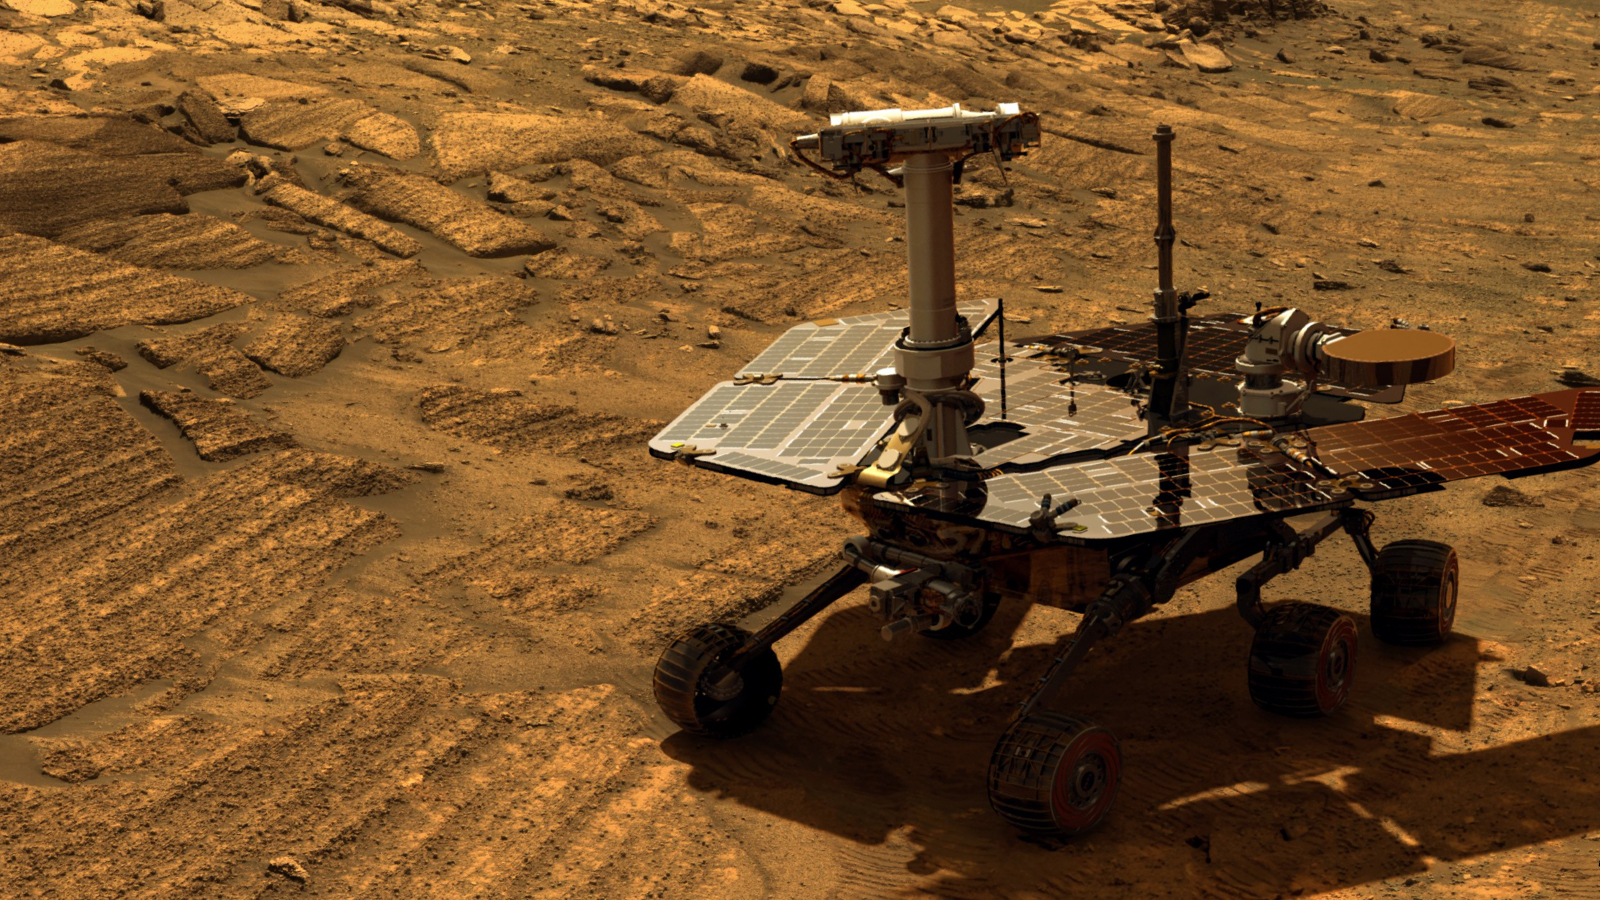 Η NASA τηλεφωνεί στο ρόβερ Opportunity στον Άρη αλλά δεν απαντά- Μειώνονται οι πιθανότητες να είναι «ζωντανό»